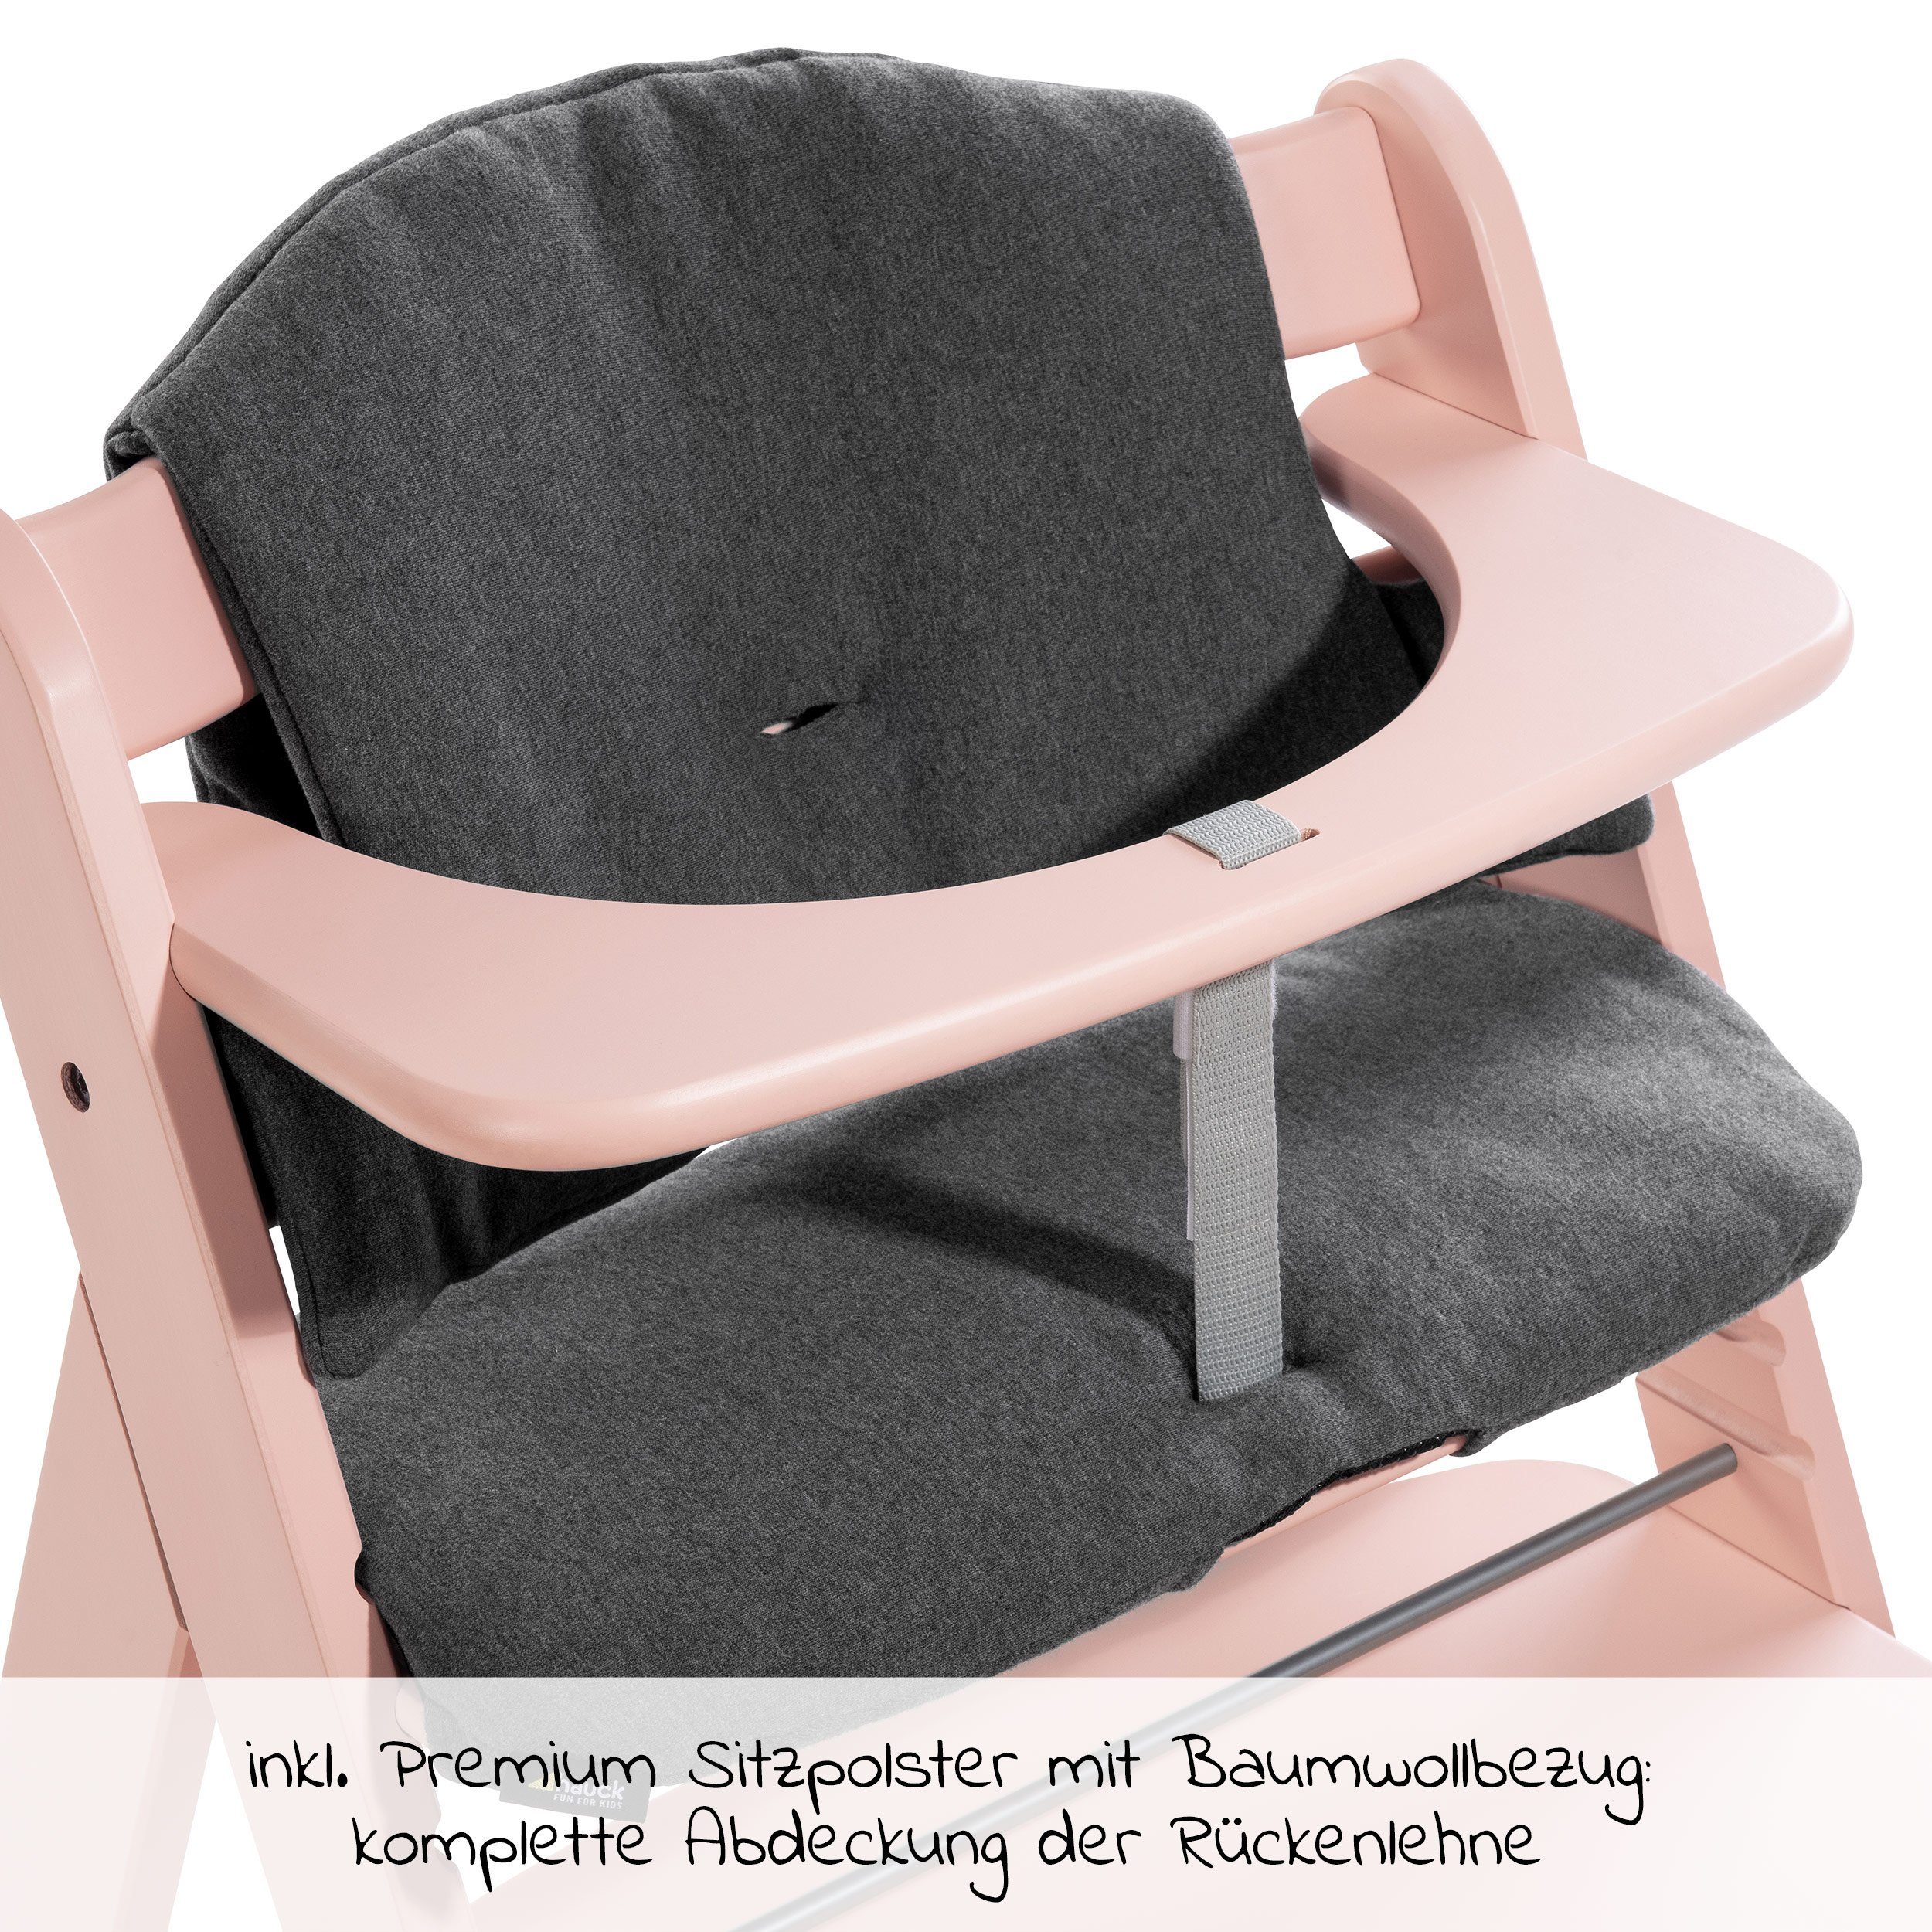 Mitwachsender Plus - Alpha höhenverstellbar Kinderhochstuhl Hauck Holz St), Sitzauflage mit Hochstuhl Rosa (2